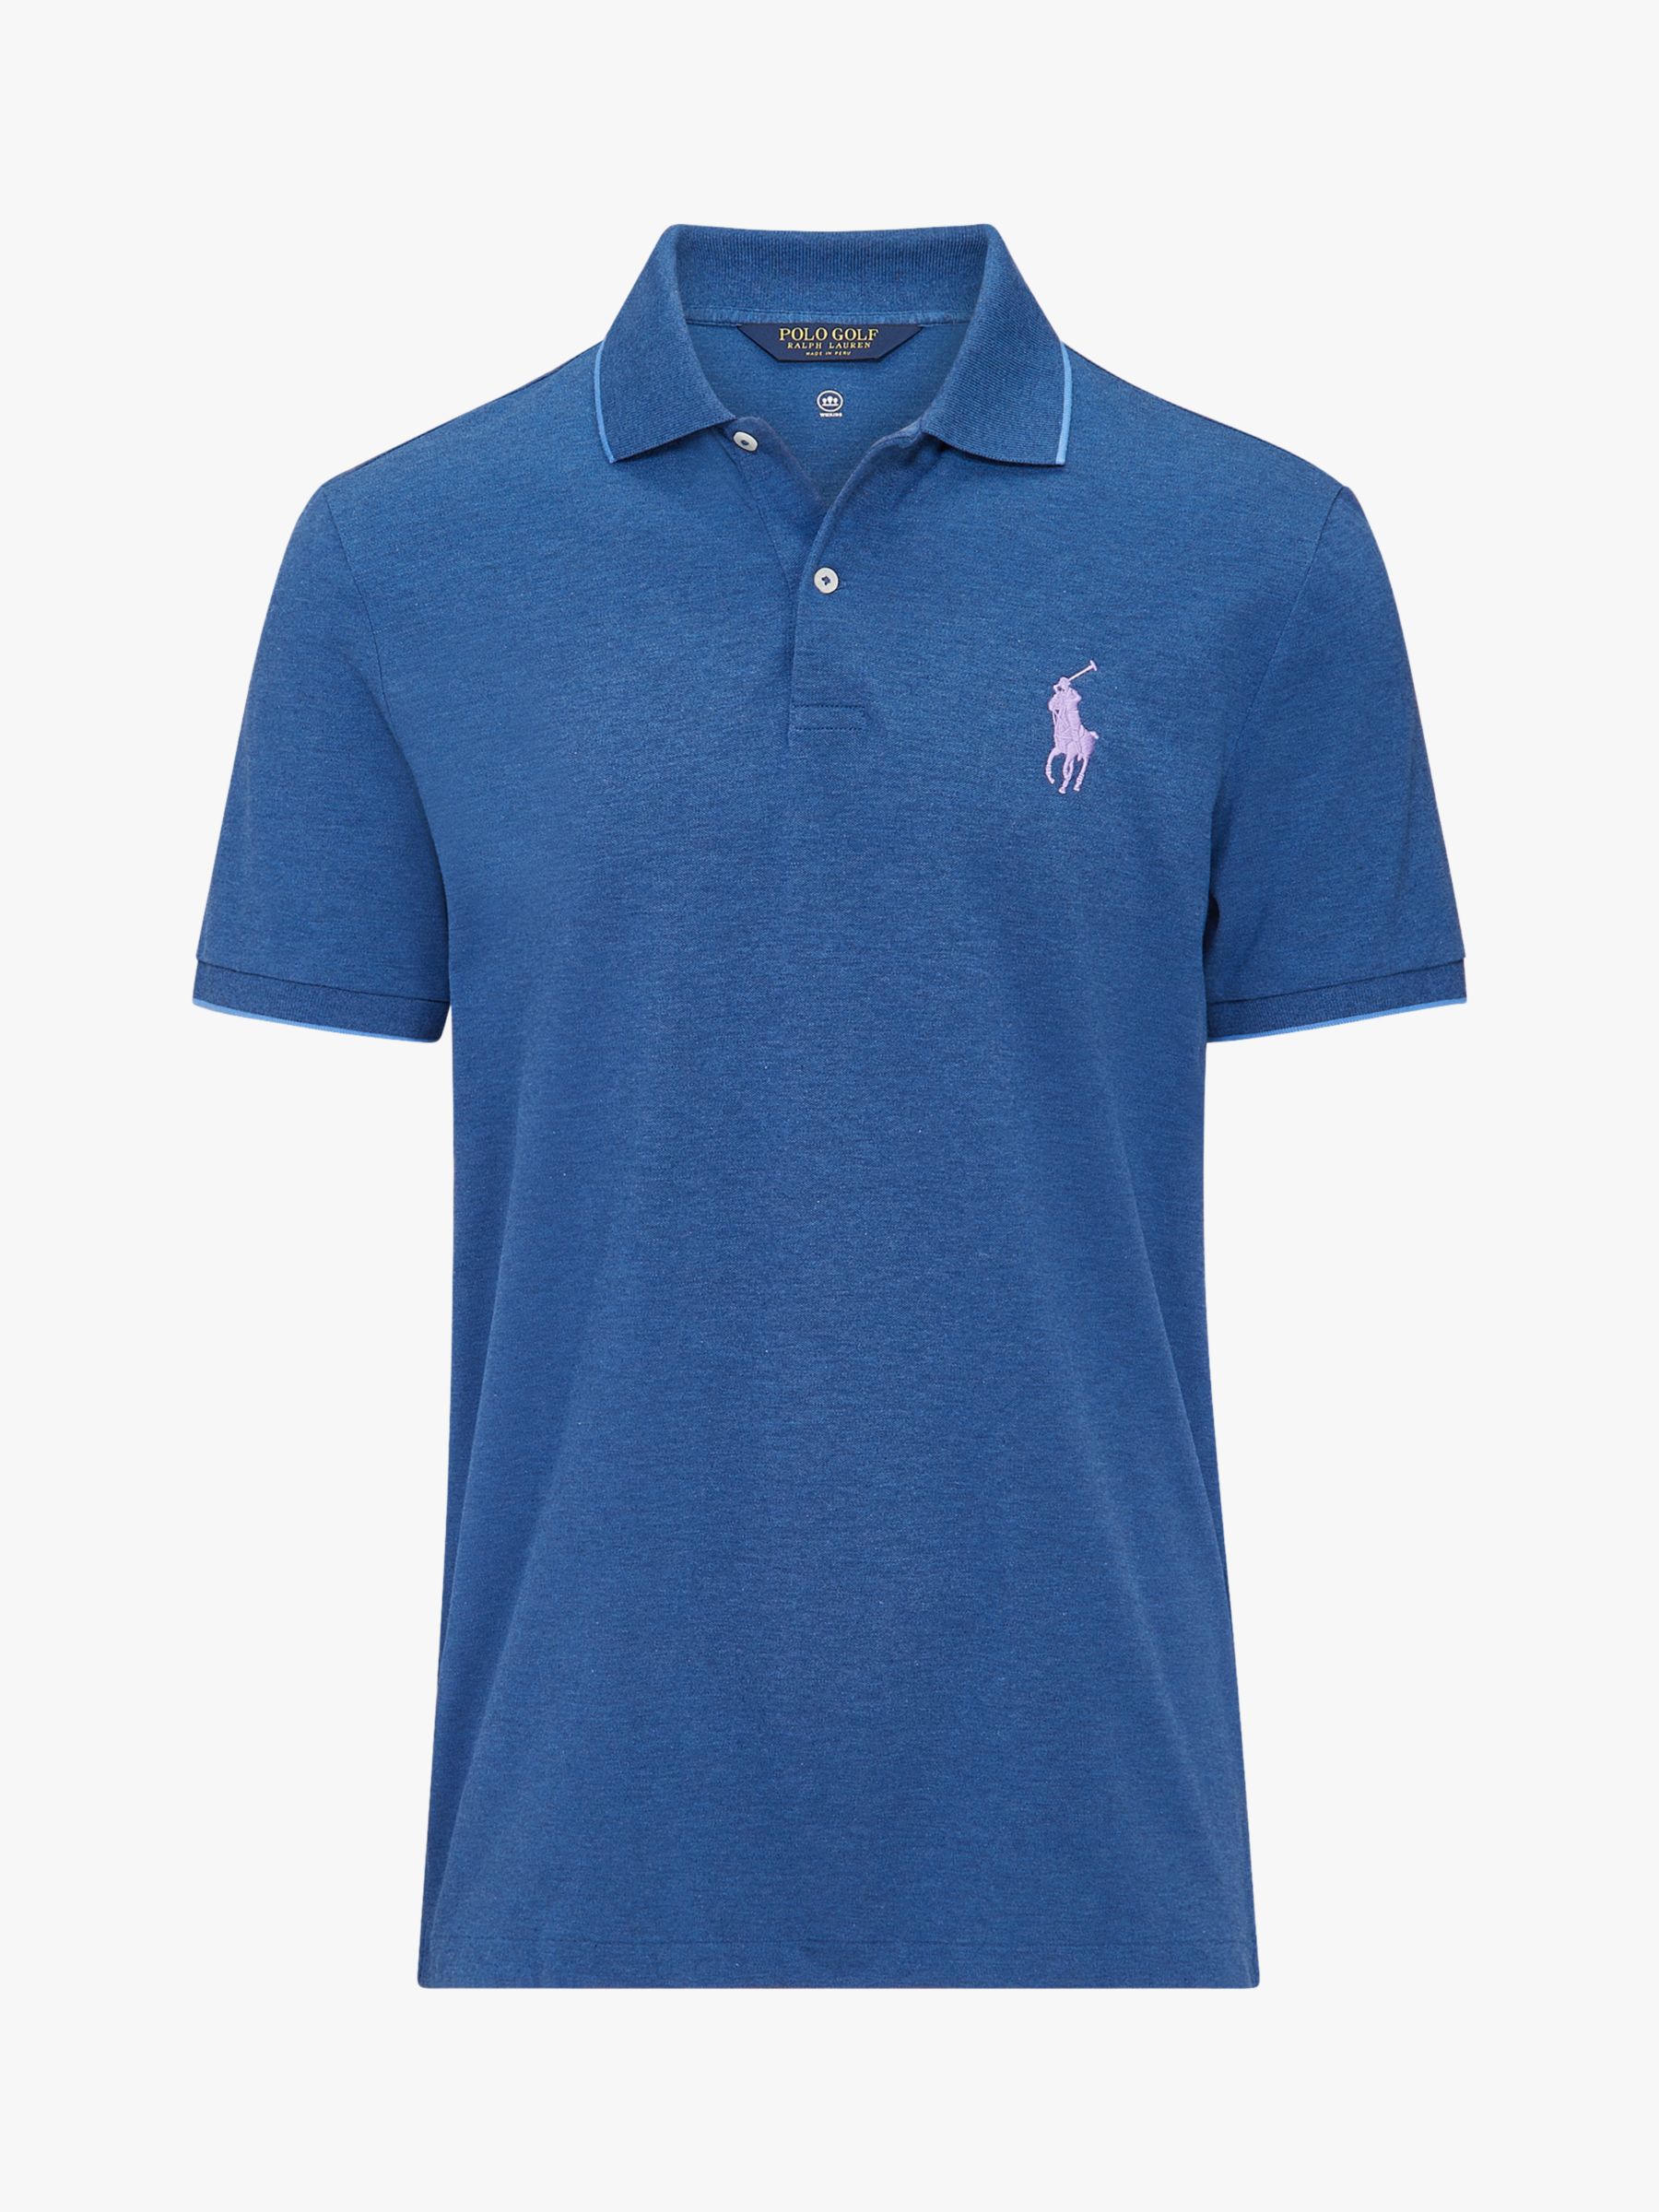 polo golf ralph lauren shirt